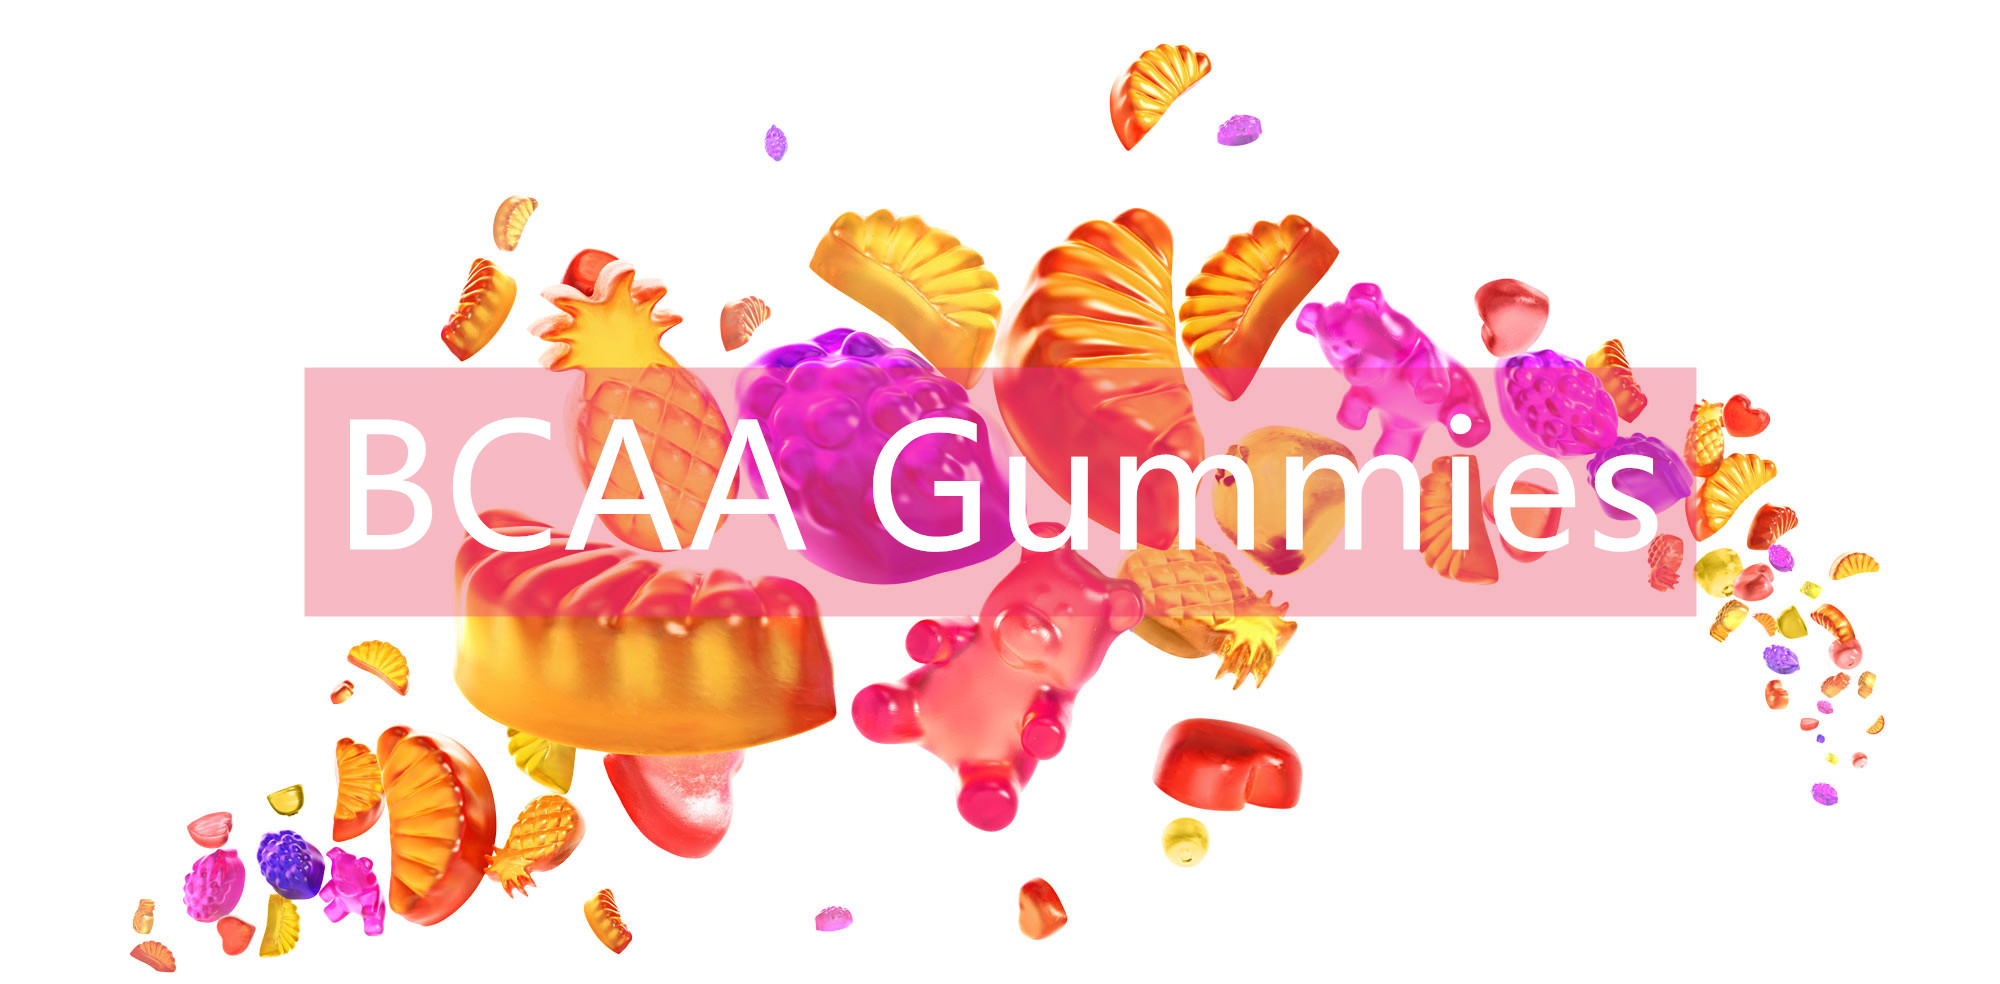 განიცადეთ შემდეგი დონის ფიტნეს გაძლიერება BCAA Gummies-ით